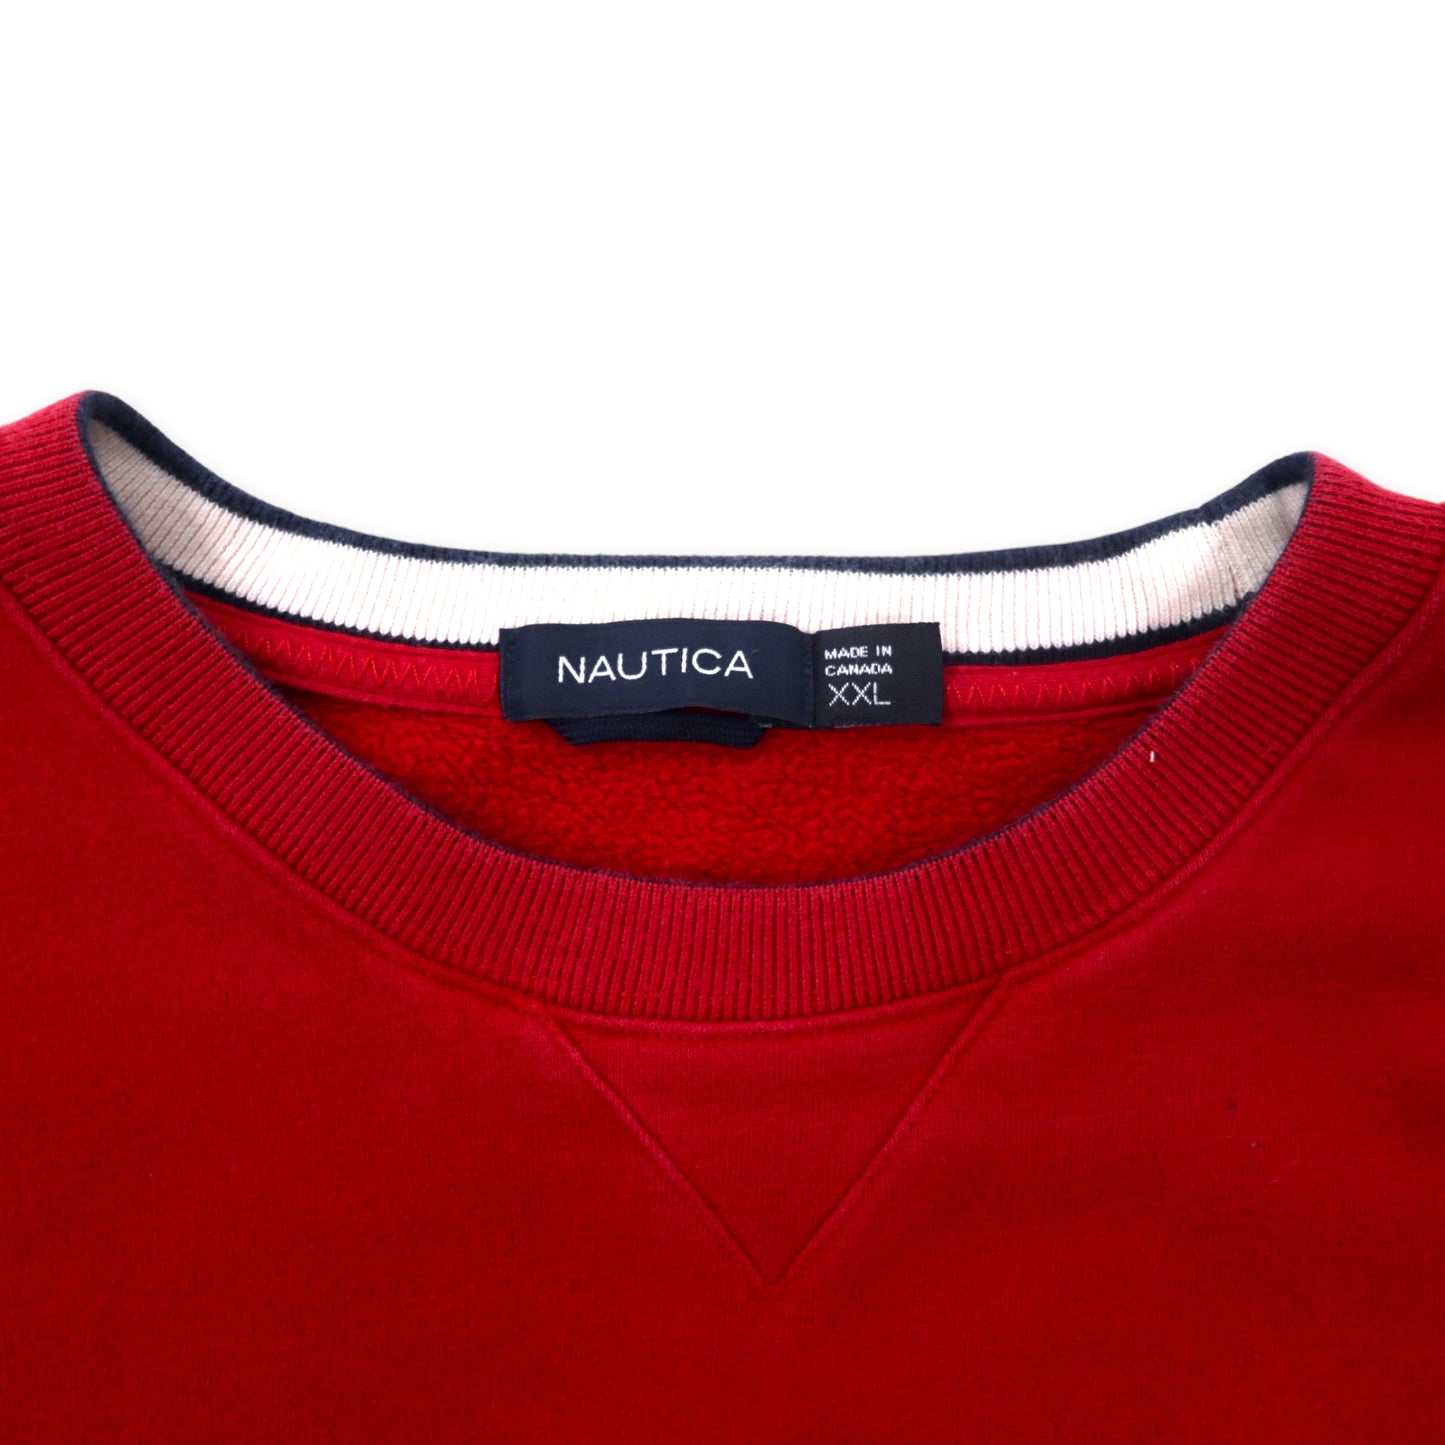 NAUTICA カナダ製 クルーネック スウェット XXL レッド コットン 裏起毛 前V ワンポイントロゴ刺繍 ビッグサイズ